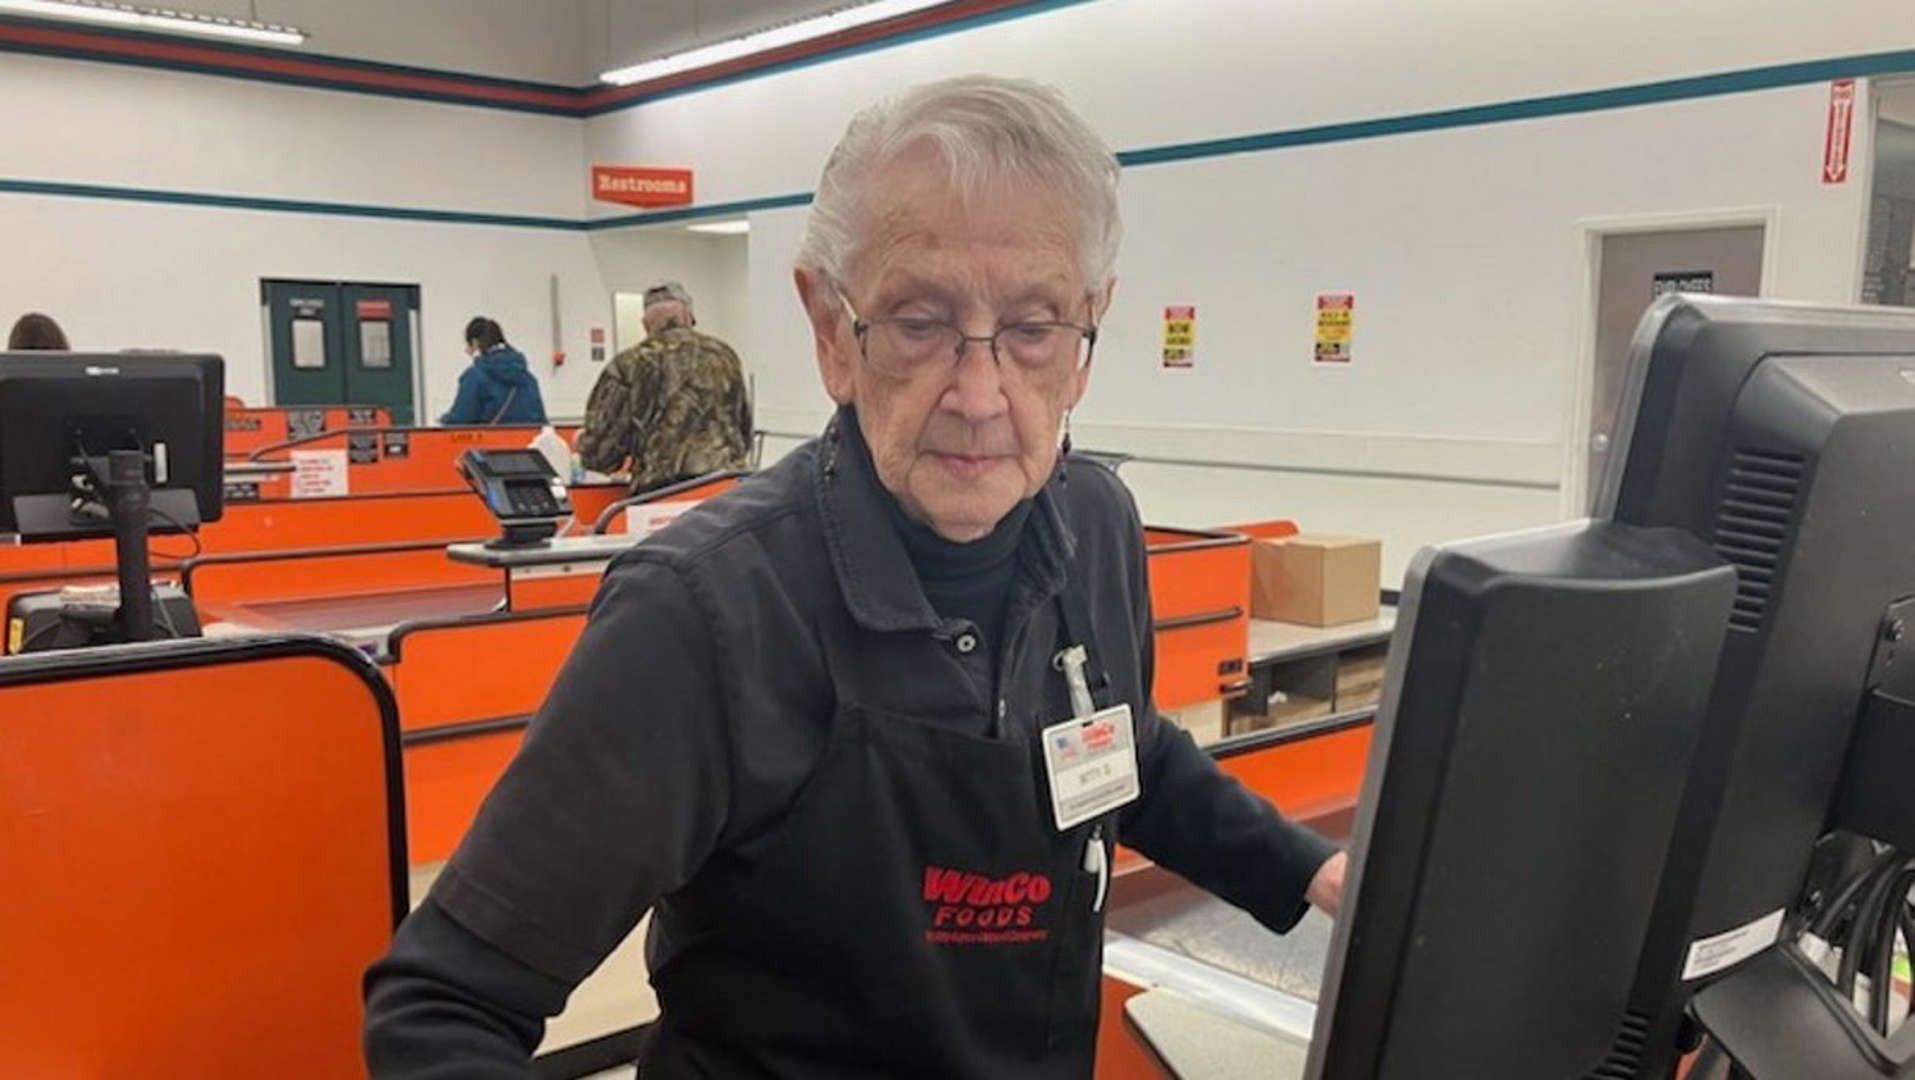 Ma 92 lata i wciąż pracuje na kasie. "Pomóżcie mi przejść na emeryturę"